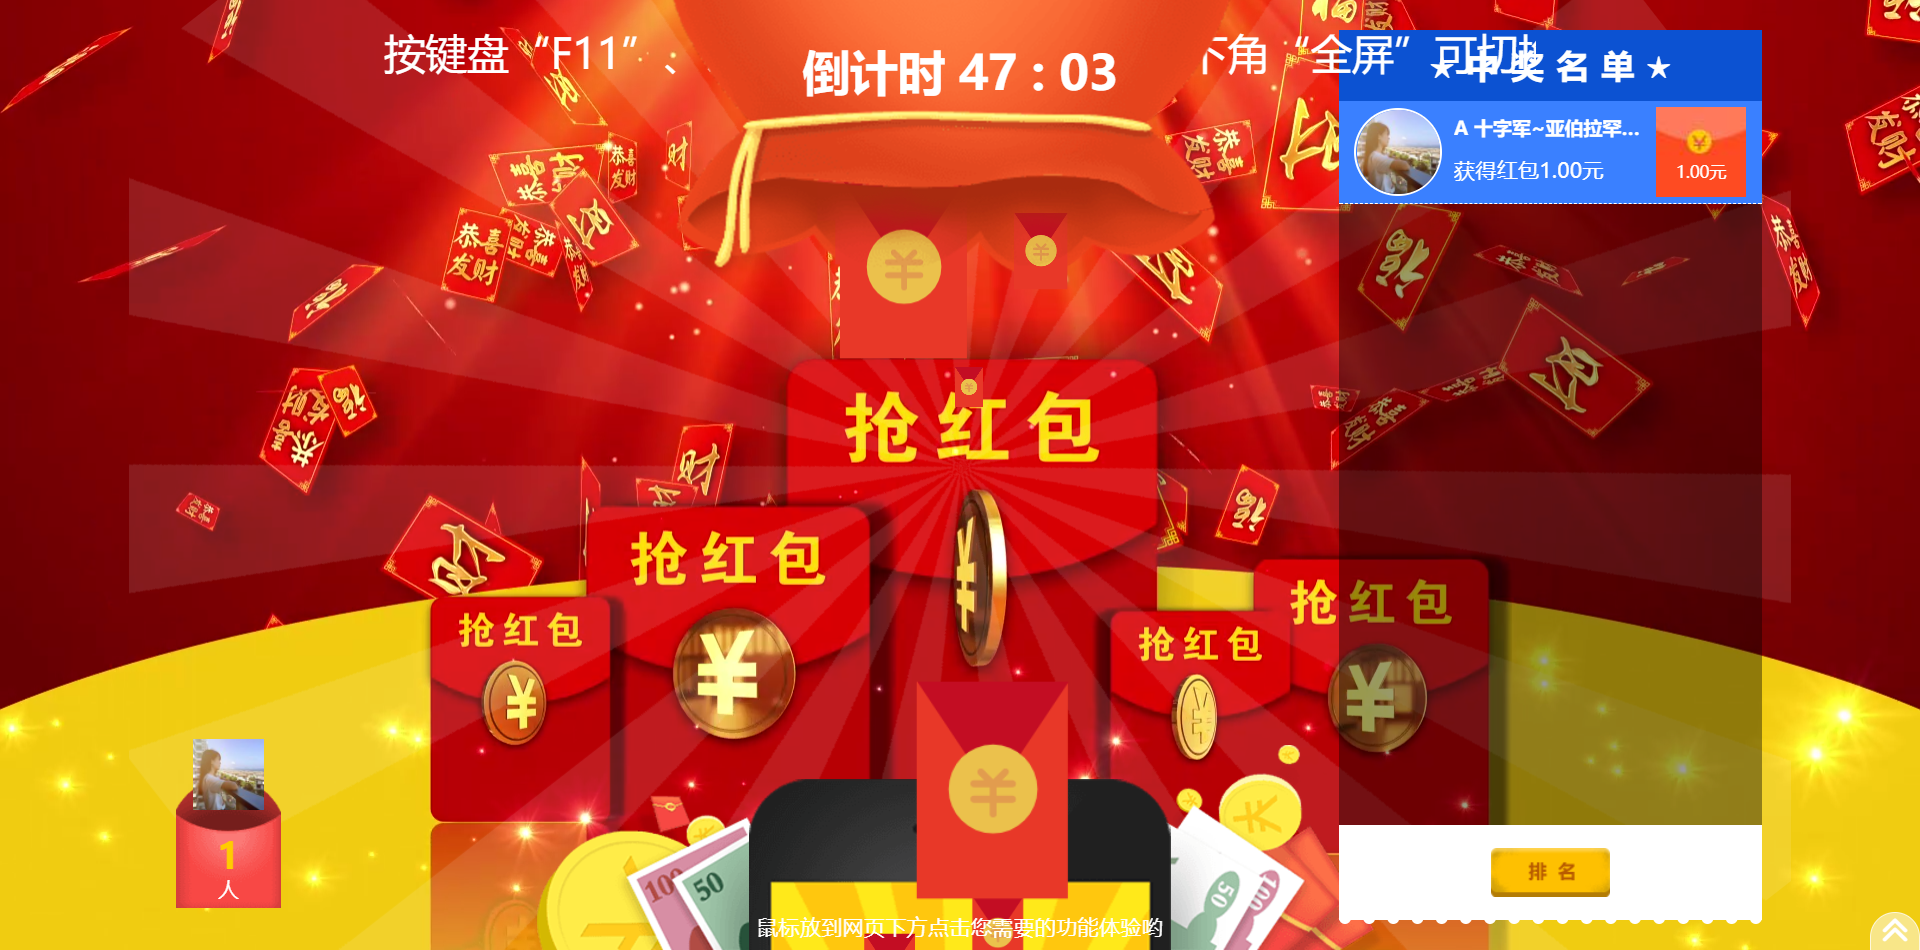 tianzan天赞云互动-微信上墙大屏互动抽奖游戏红包雨答题评分现场软件